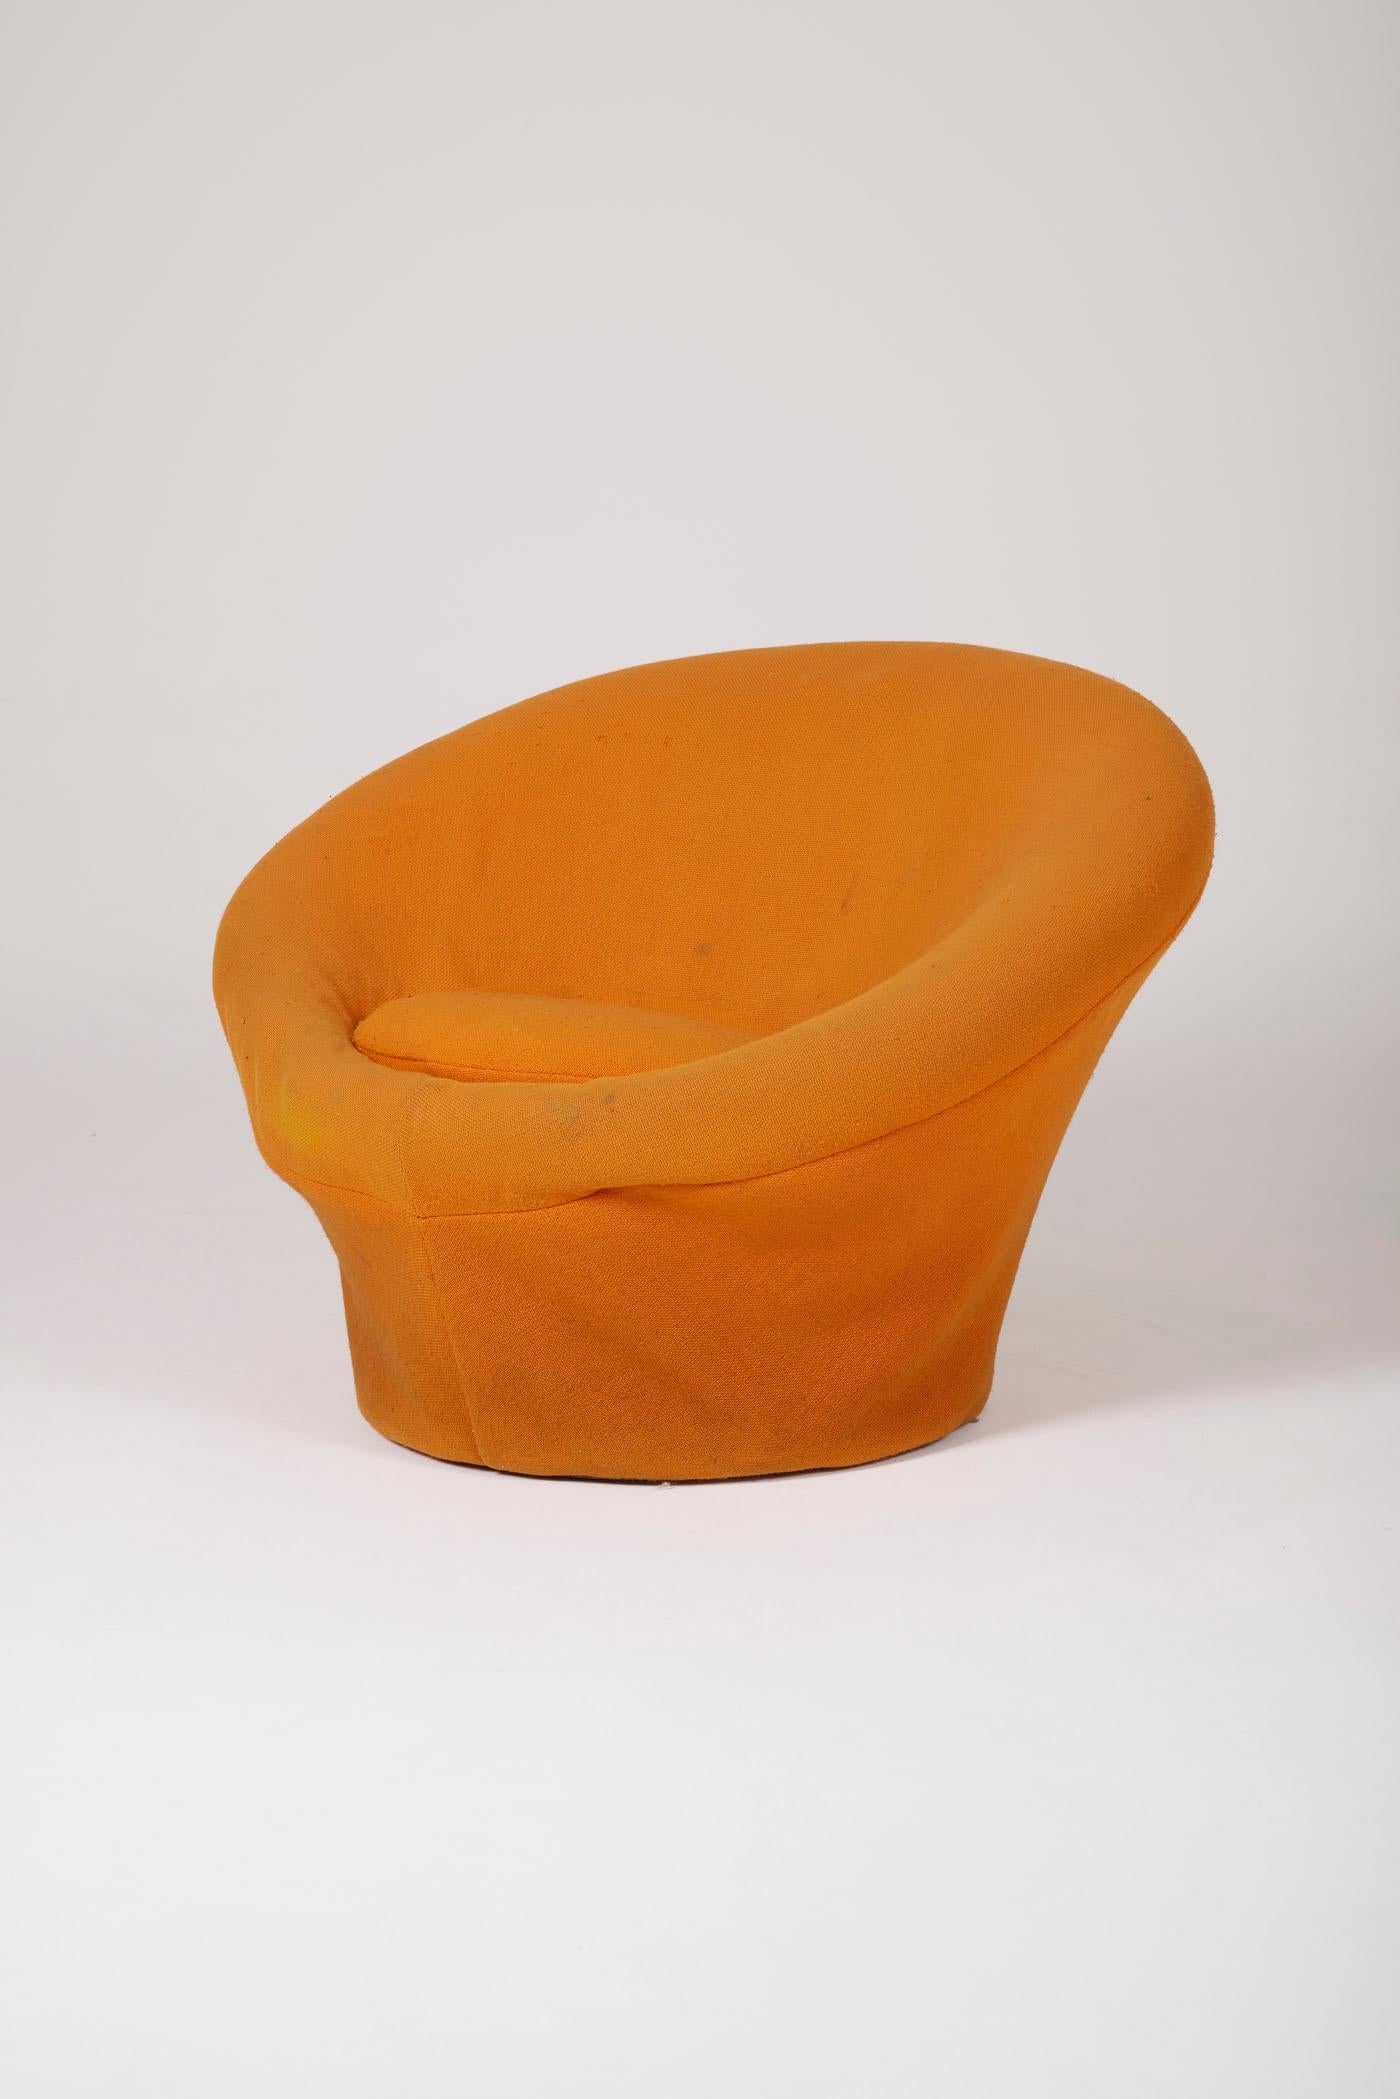  Pilzsessel des französischen Designers Pierre Paulin (1927-2009), erschienen bei Artifort in den 1960er Jahren. Dieser ikonische Sessel ist mit seinem orangefarbenen Originalstoff bezogen. Dieser Sessel, der in den 1960er Jahren mit seinen